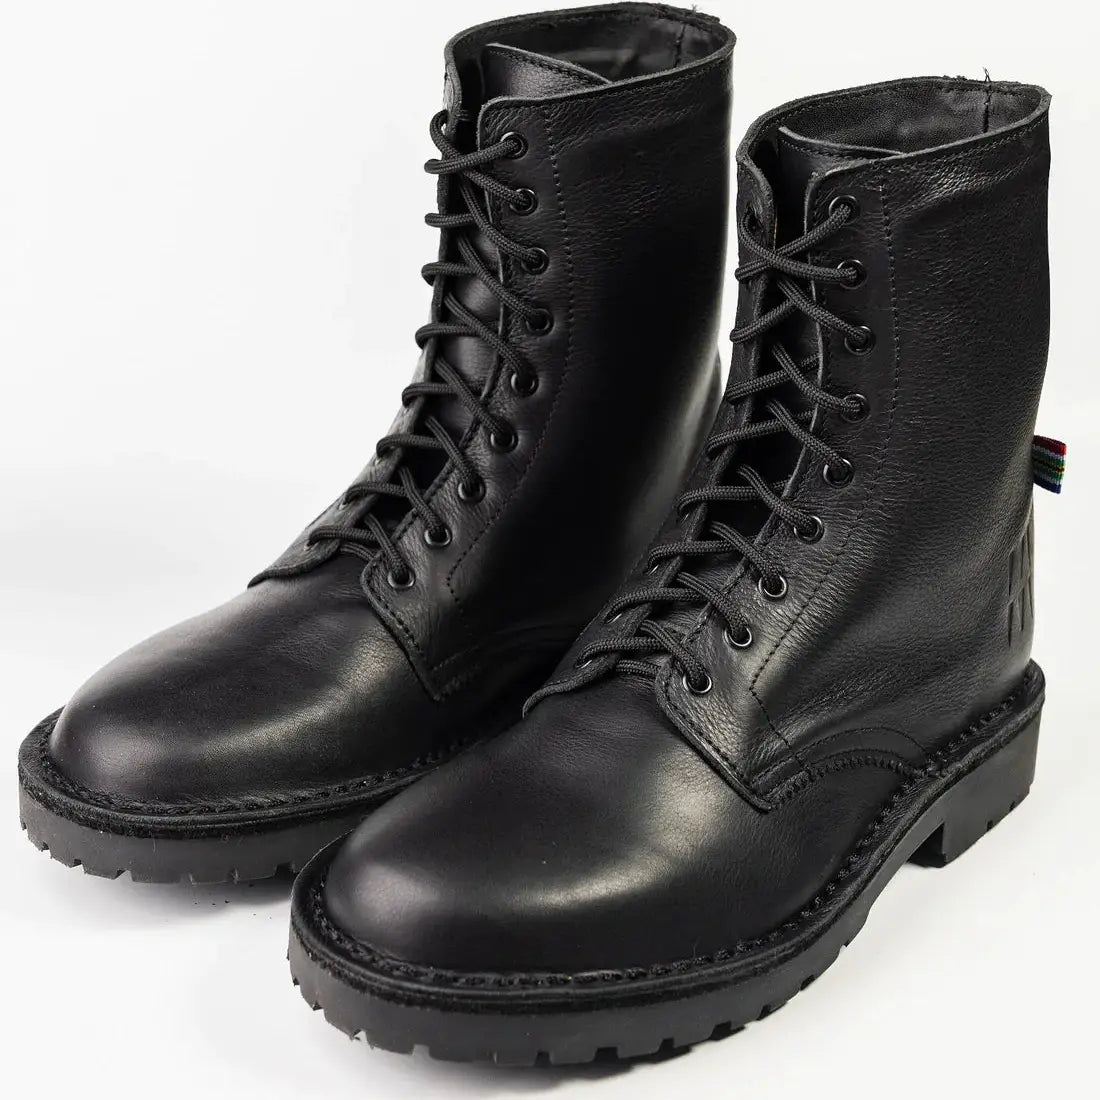 Ranger Boots - Black Leather Veldskoen shoes stok.